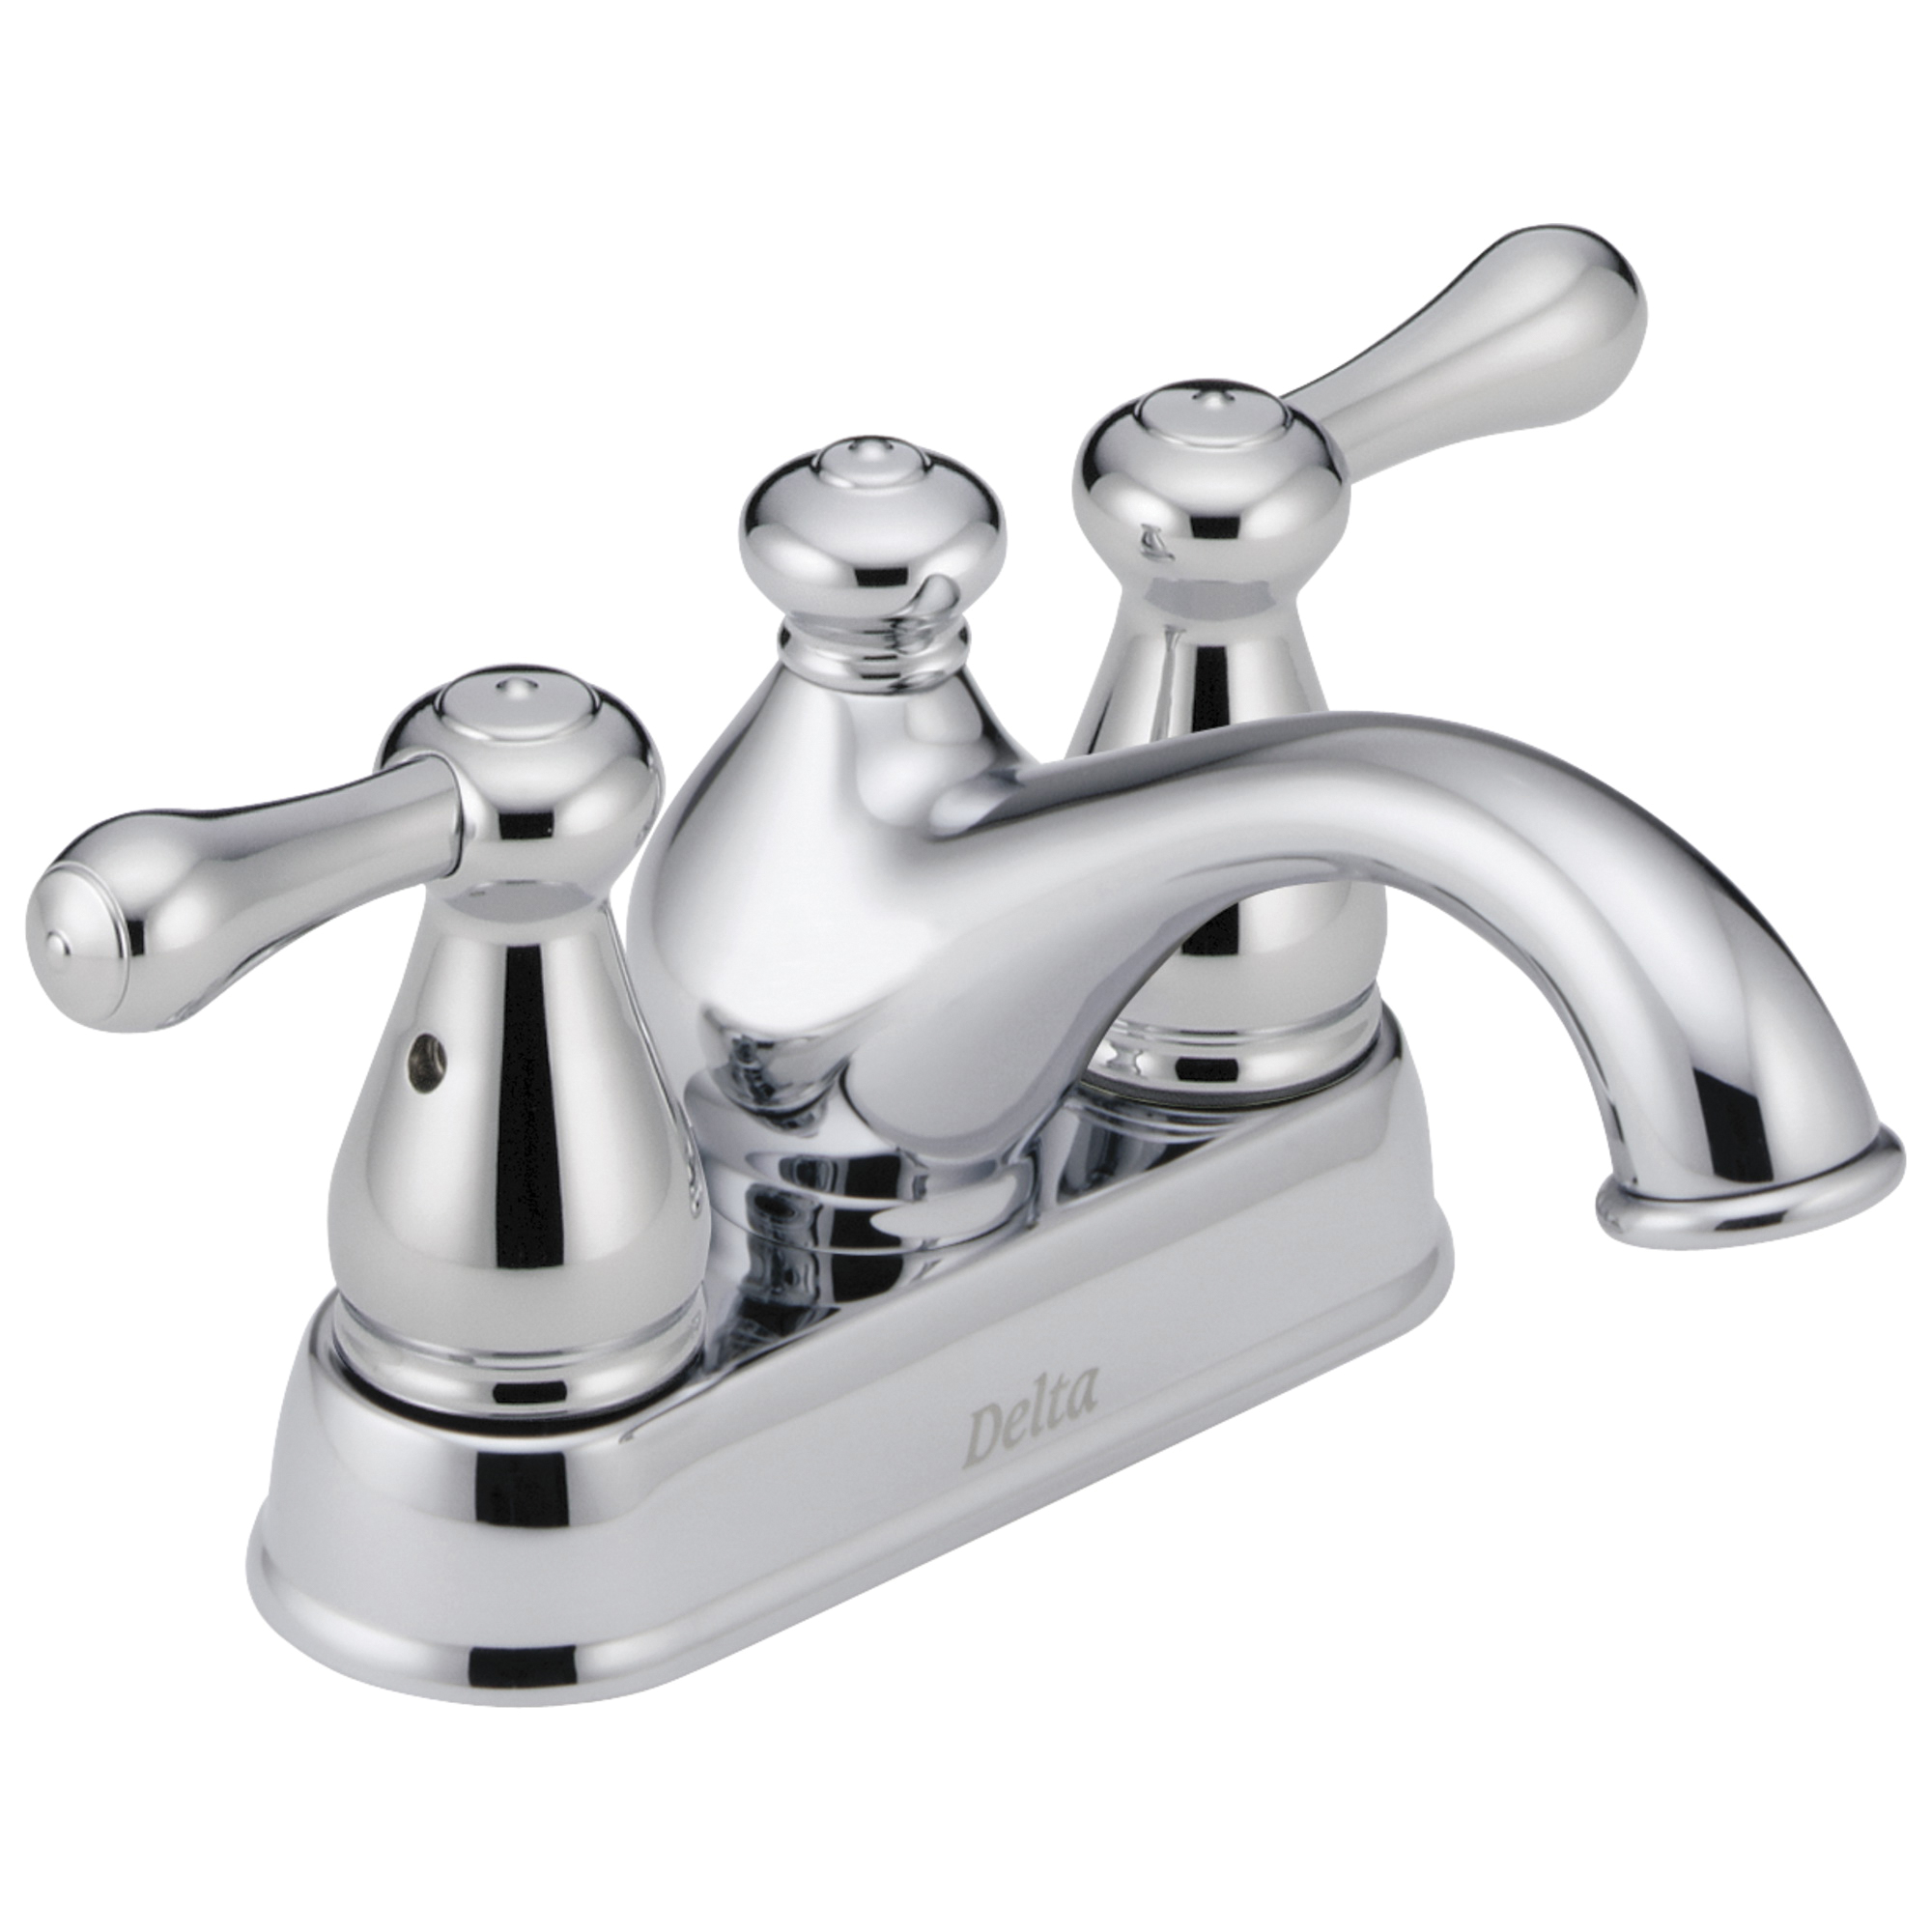 DELTA® 2578LF-278 Centerset Lavatory Faucet, Leland®, Chrome Plated, 2 Handles, 50/50 Pop-Up Drain, 1.2 gpm